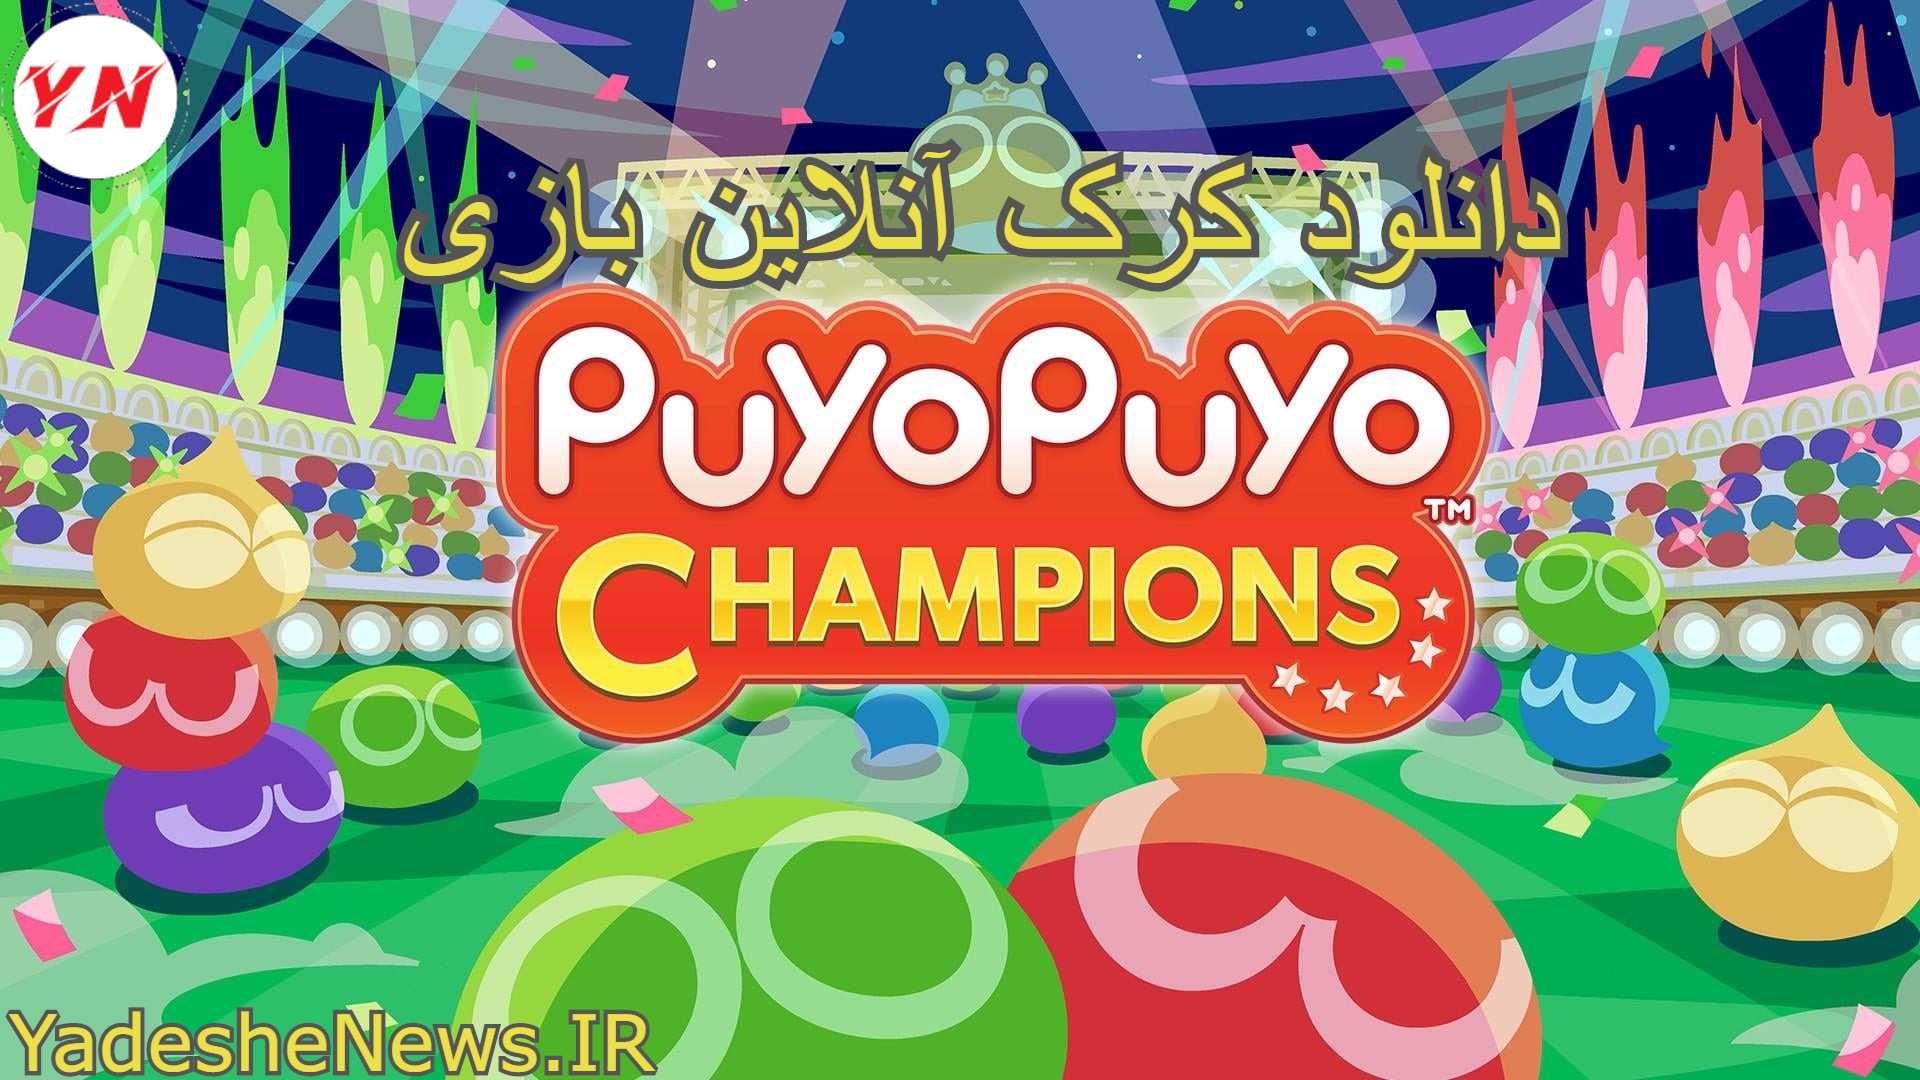 دانلود کرک آنلاین بازی Puyo Puyo Champions